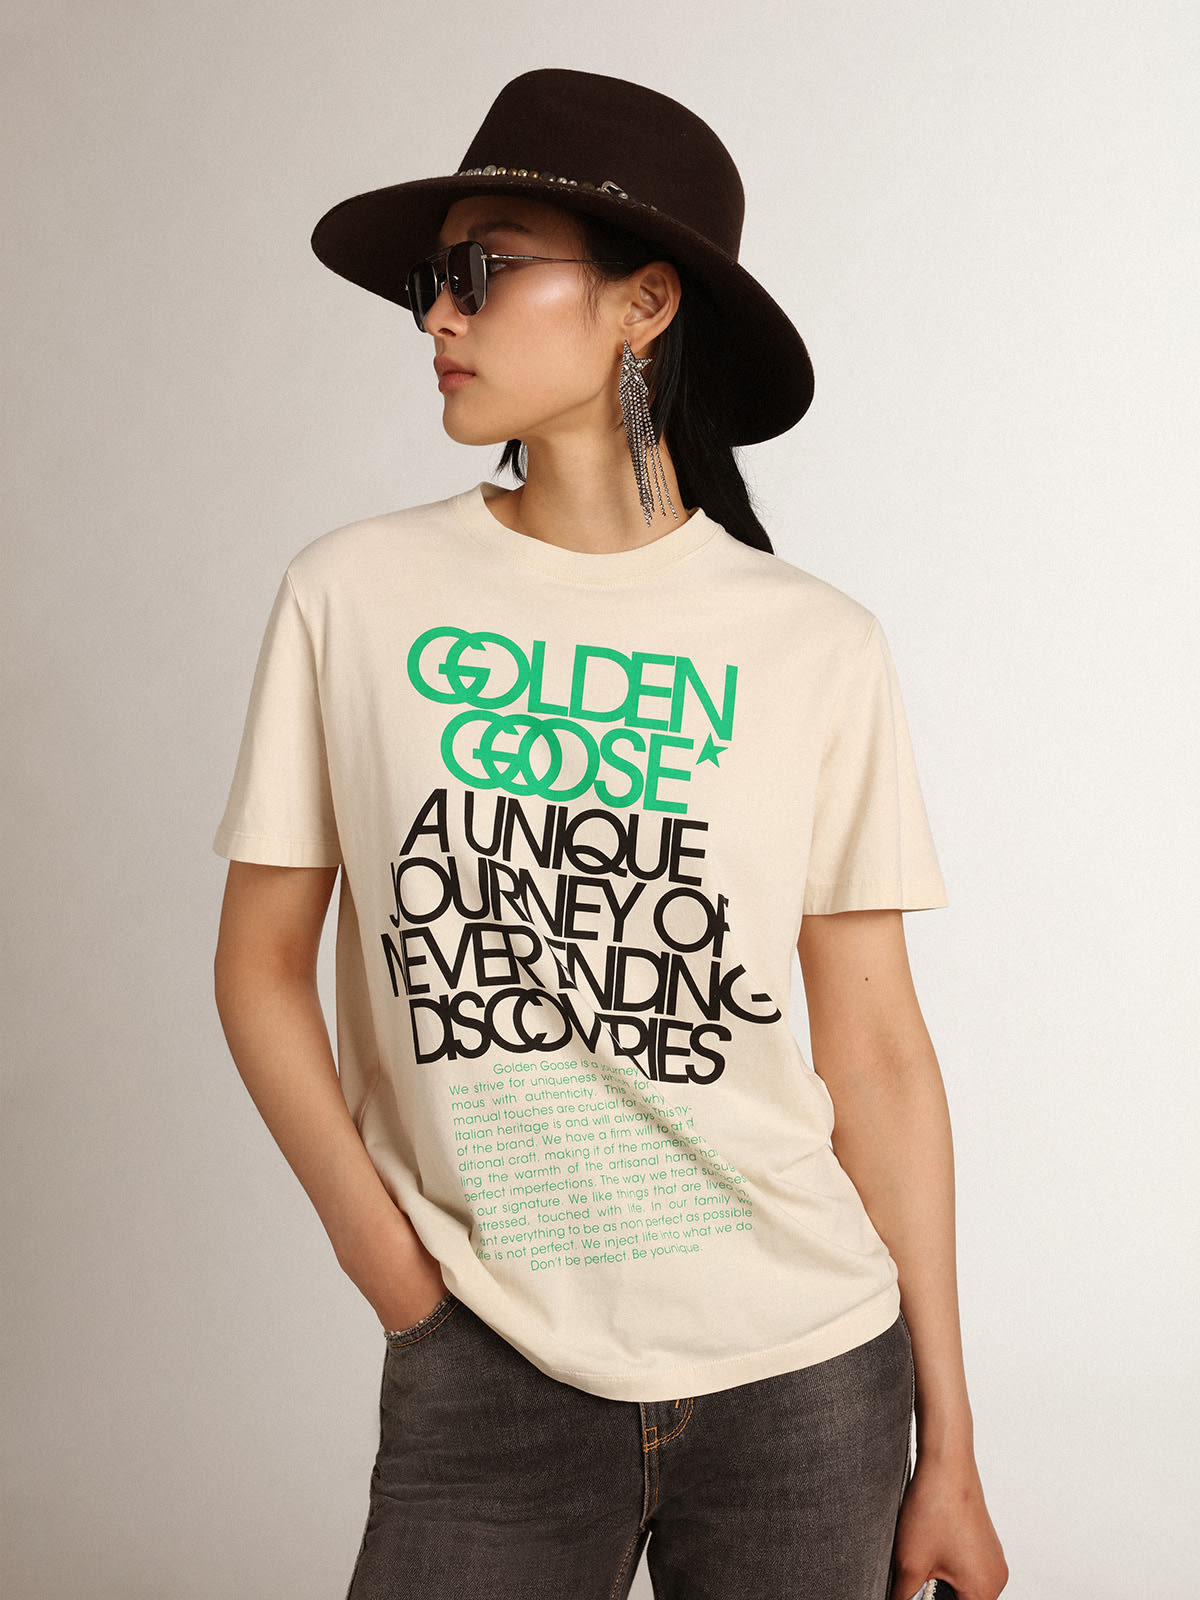 Golden Goose - T-shirt da donna di colore bone white con scritte sul davanti in 